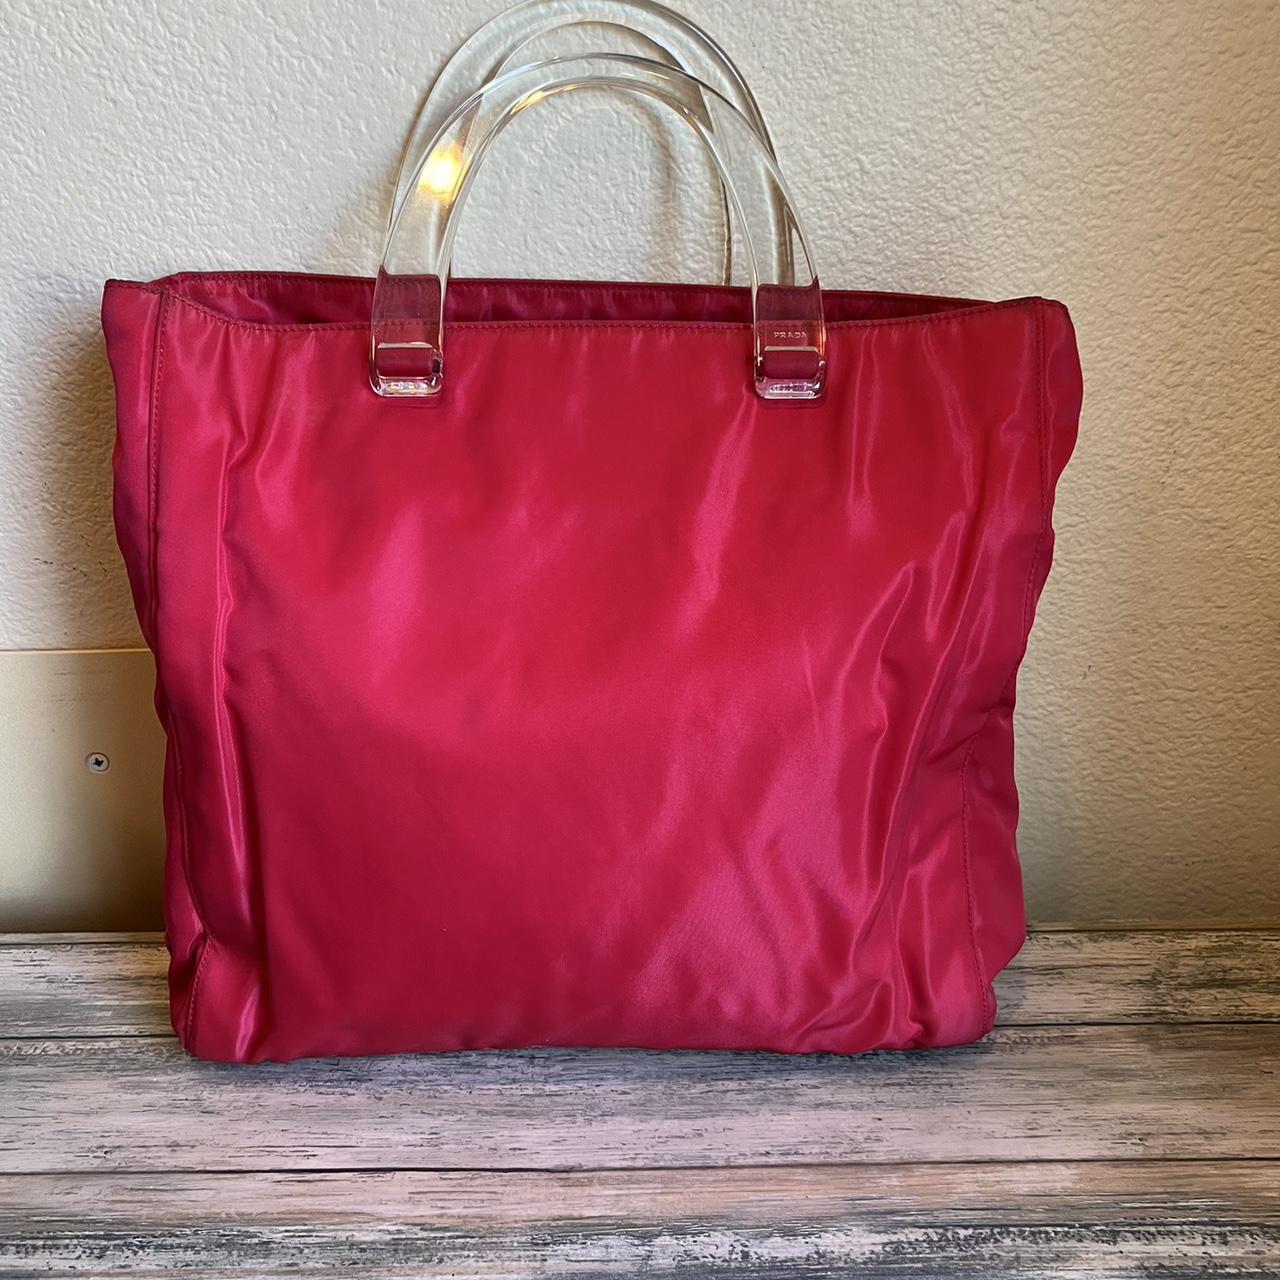 Prada Women's Tote Bags - Red